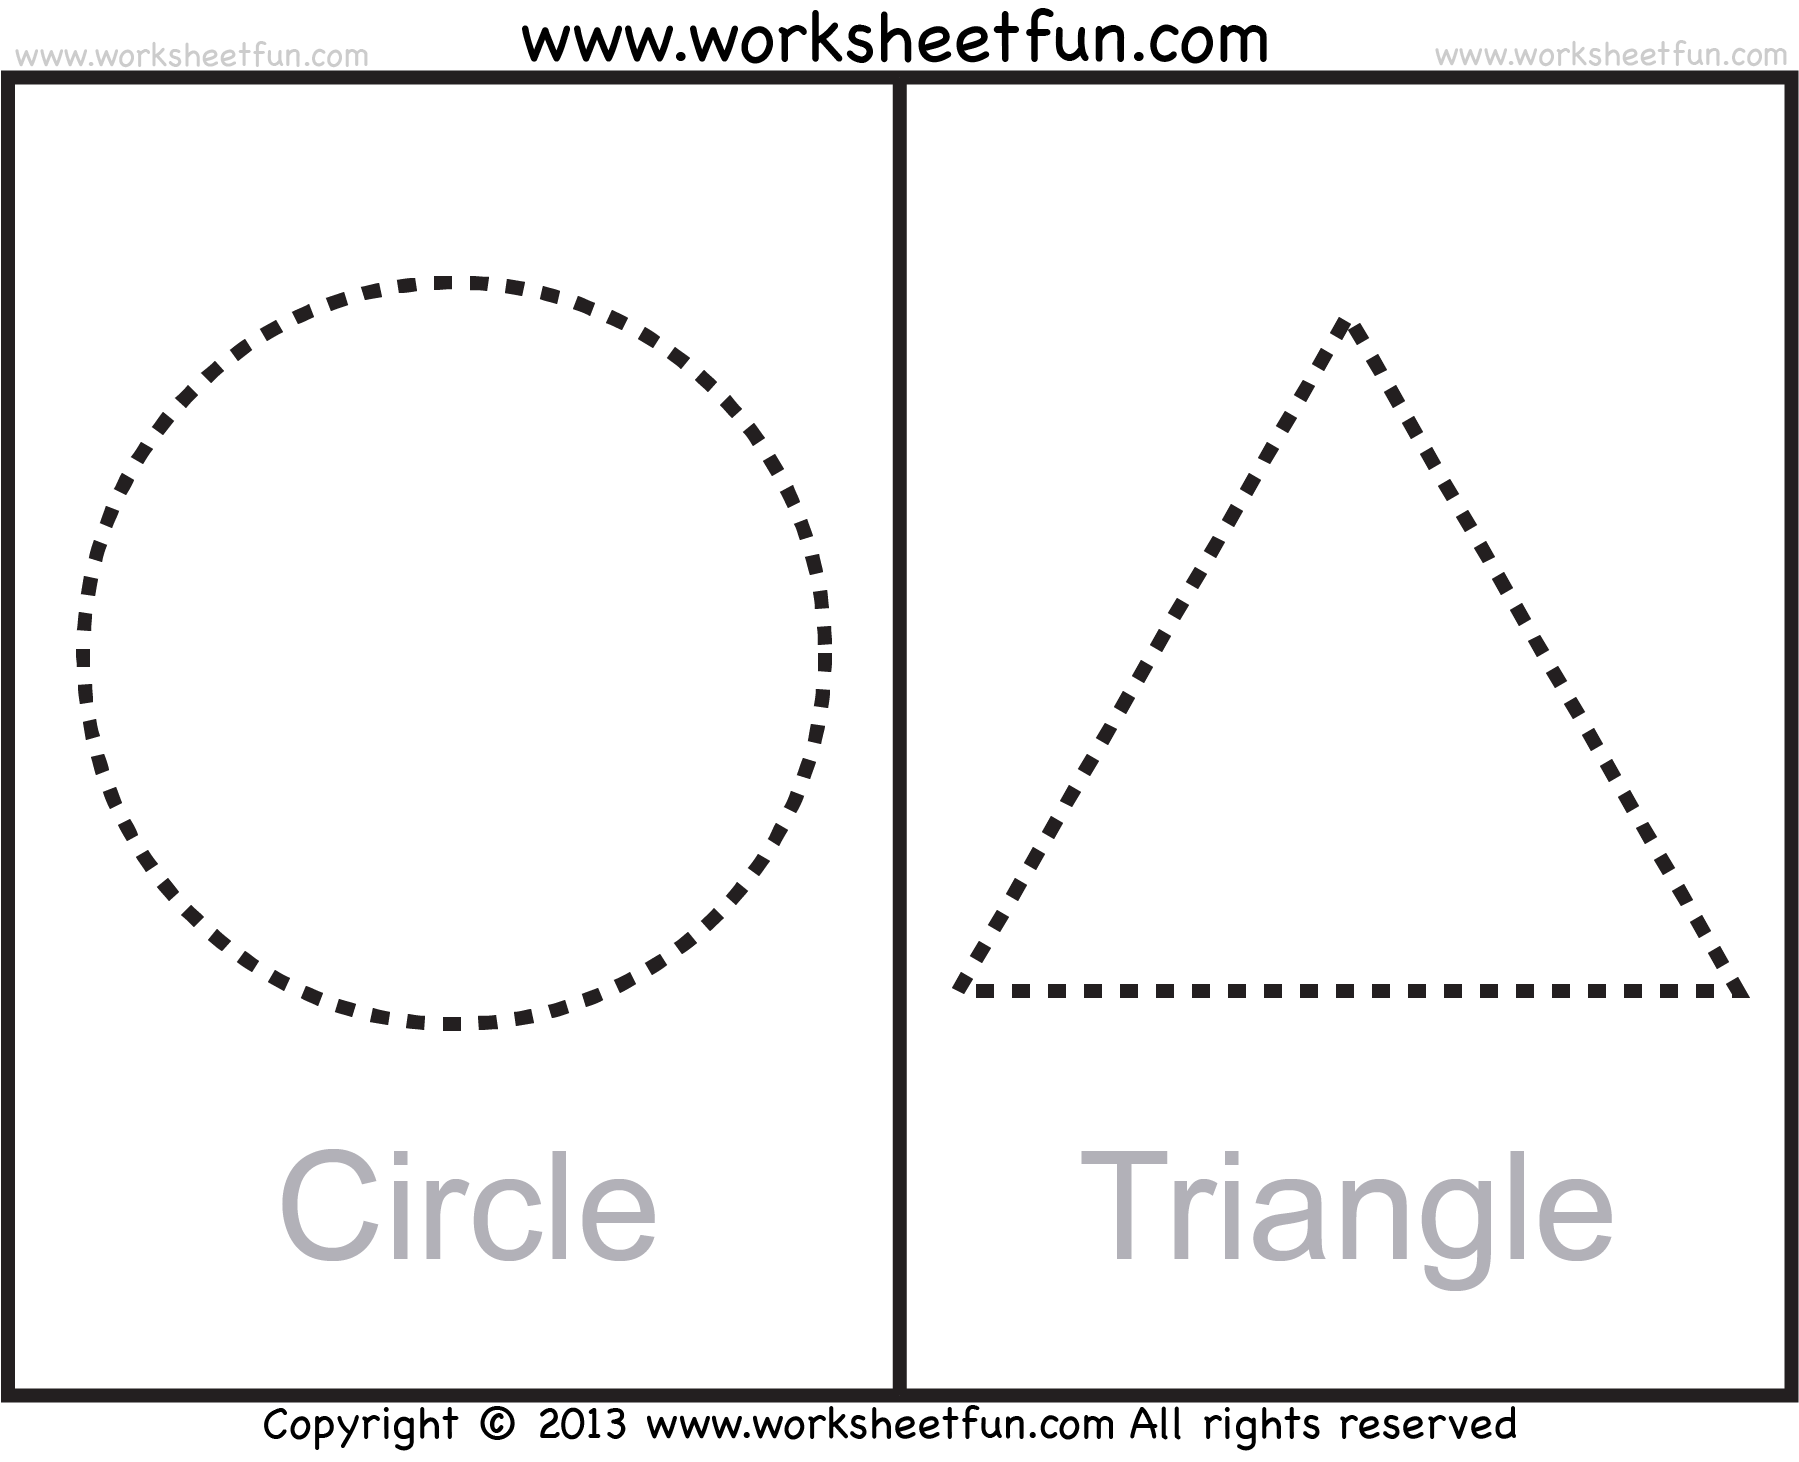 Shapes сшксдуб екшфтпдуб ыйгфку прописи для детей. Круг треугольник квадрат пунктиром. Обводка круг квадрат треугольник. Геометрические фигуры обвести квадрат круг треугольник. Circle triangle